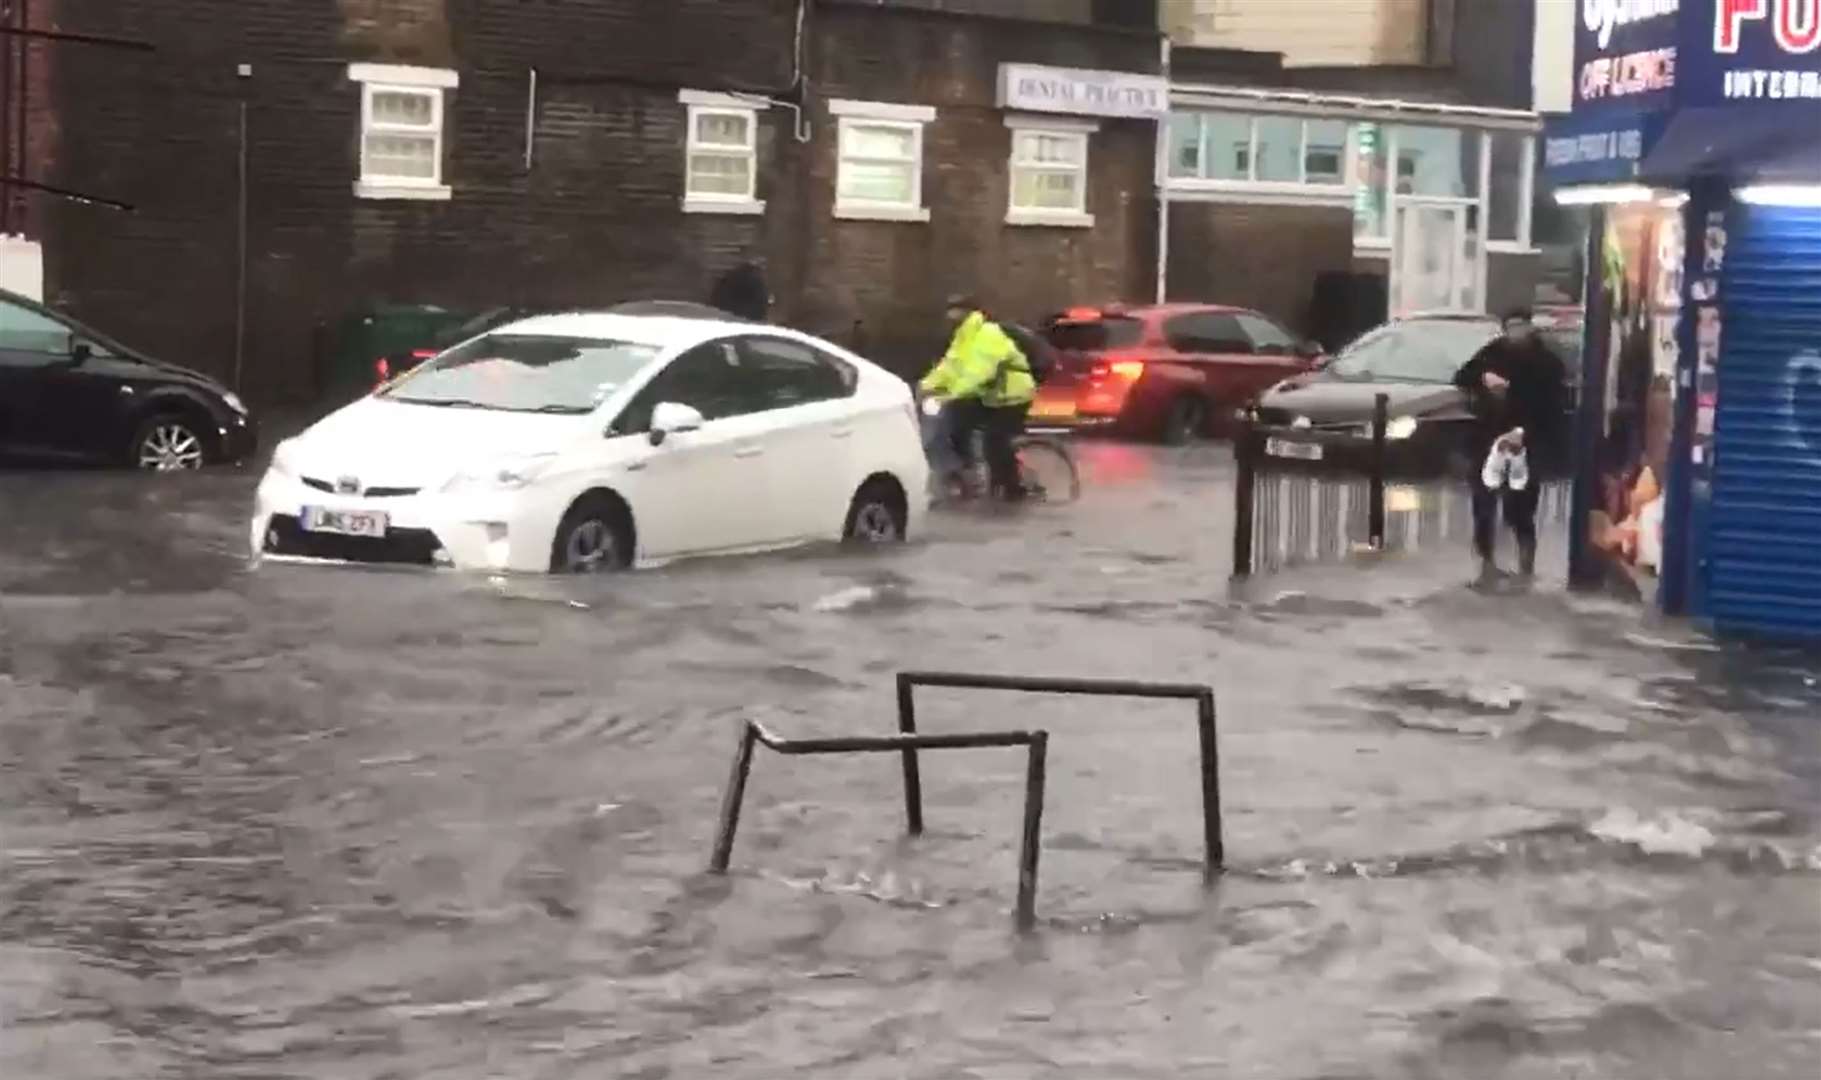 Flooding in London in 2021 (@braggendasz/PA)